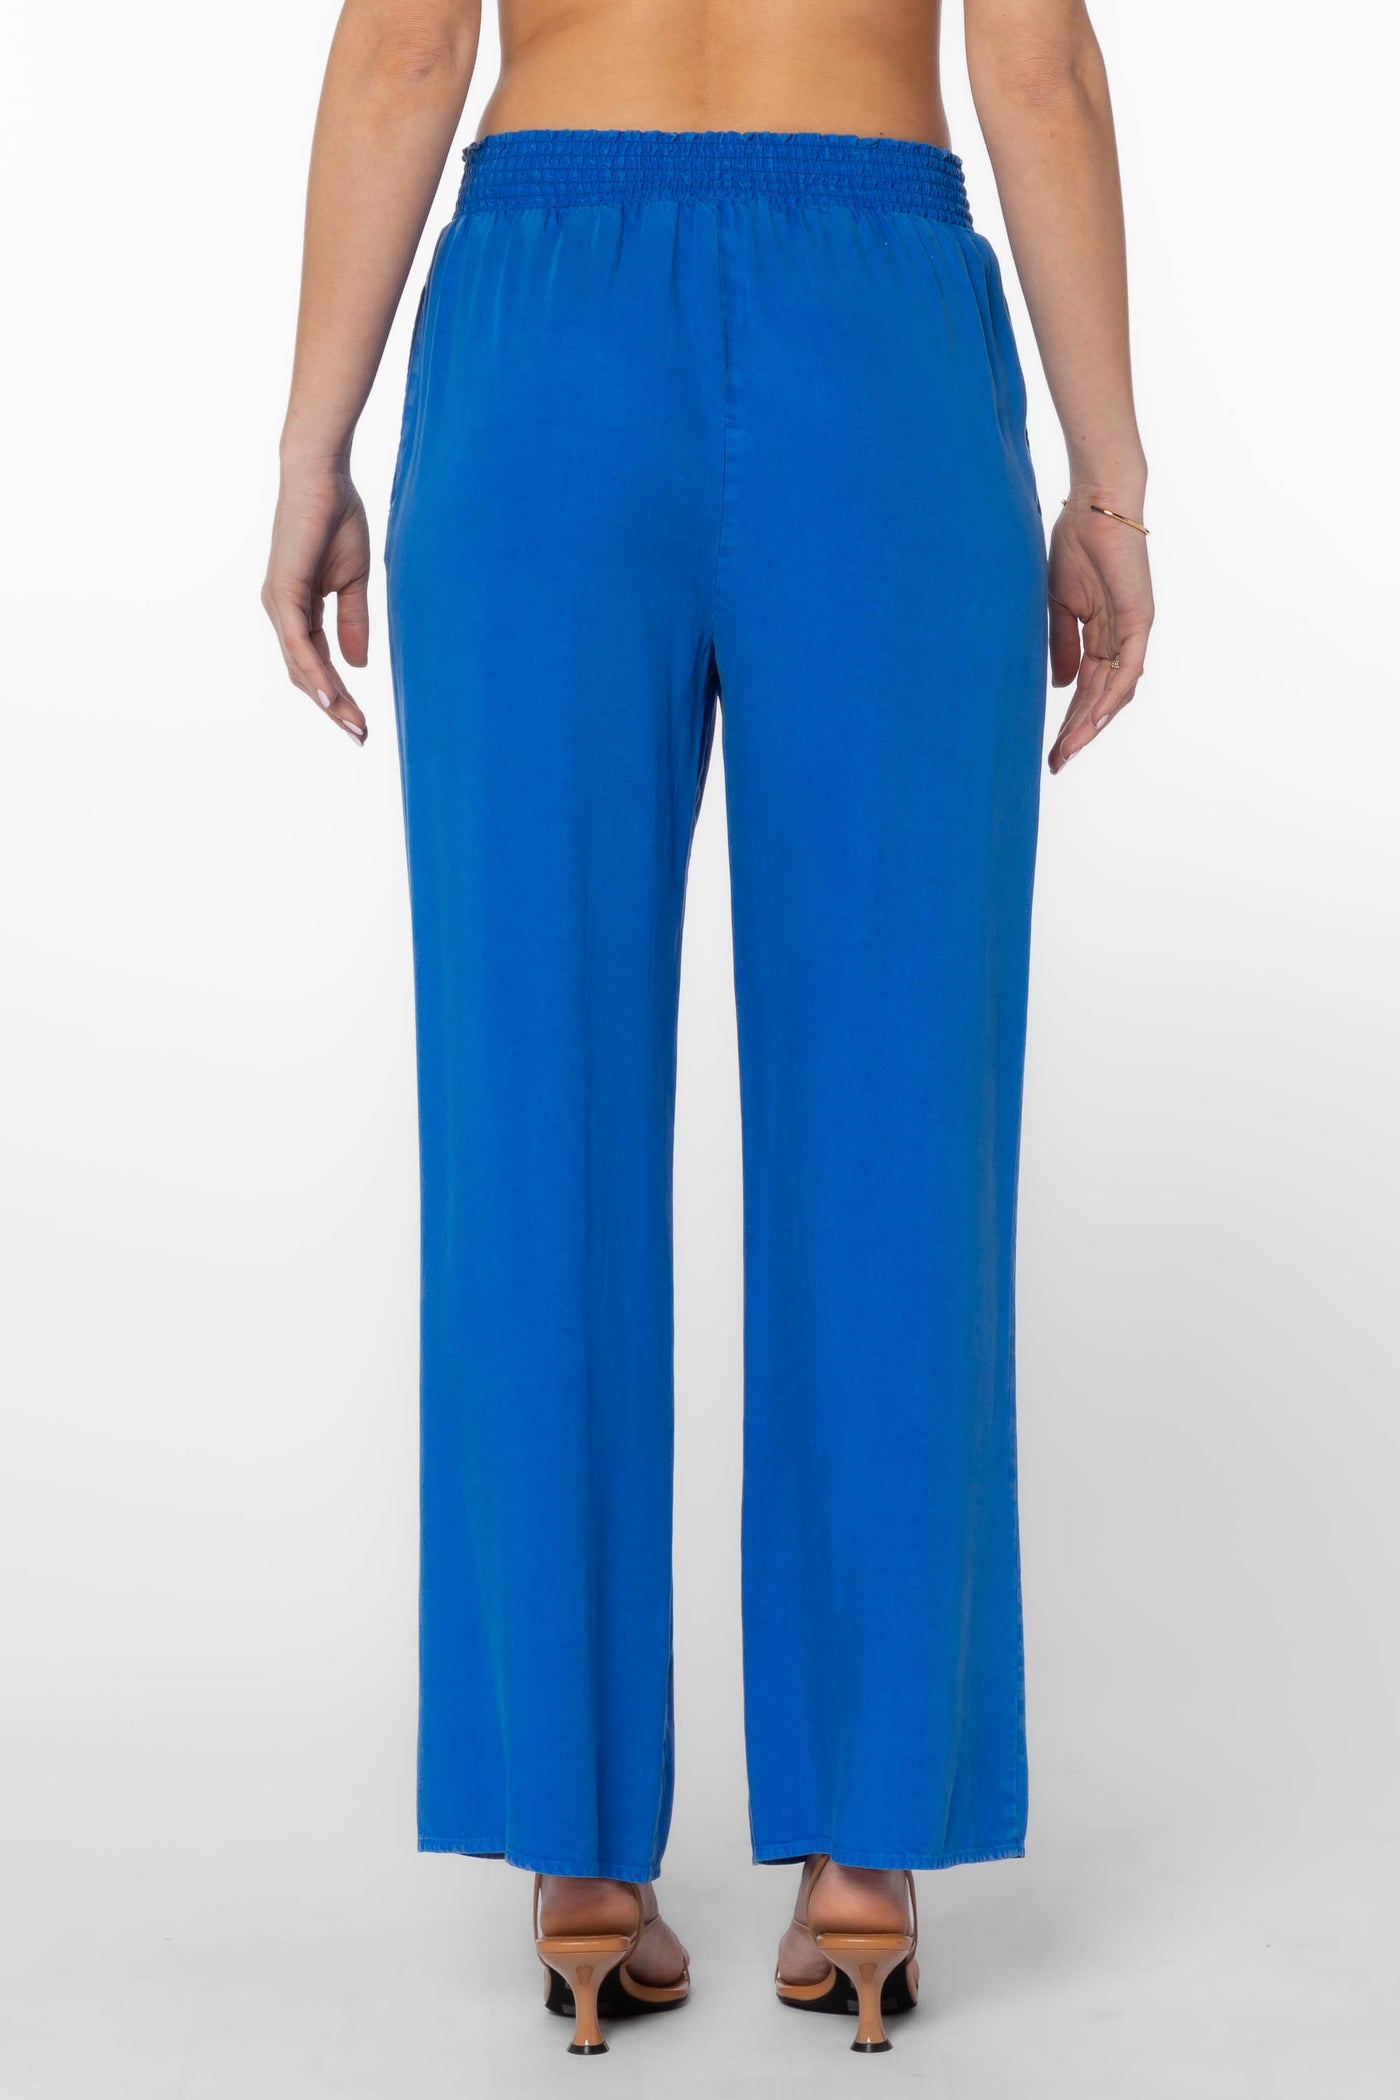 Morelia Blue Pants - Bottoms - Velvet Heart Clothing